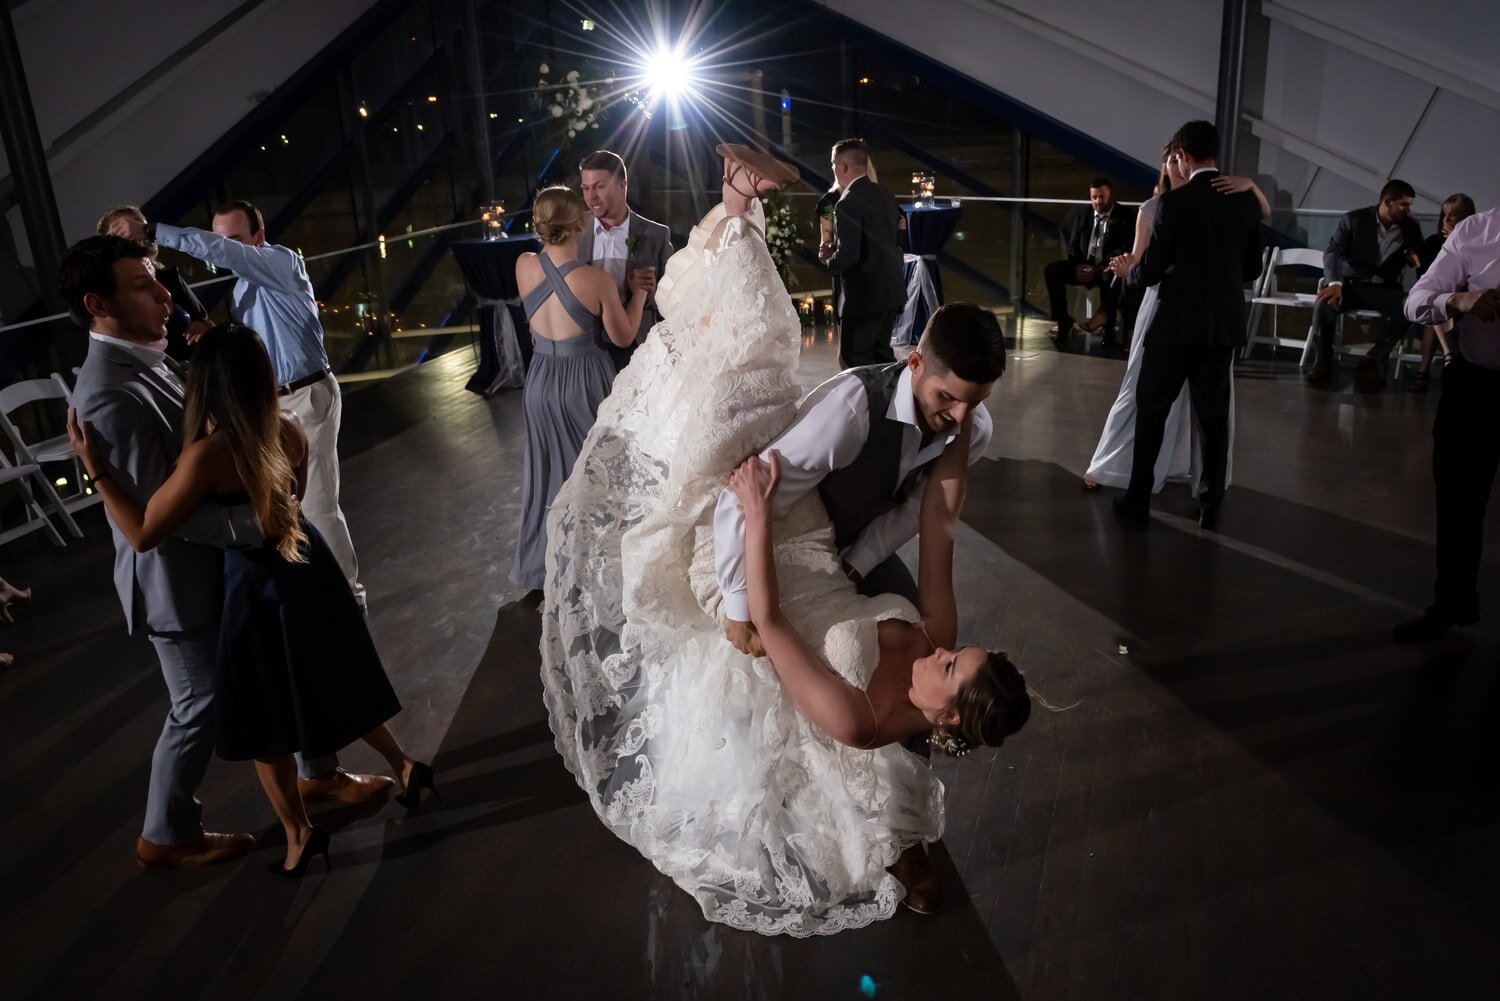 bride-groom-first-dance-leg-kick-fun.jpg